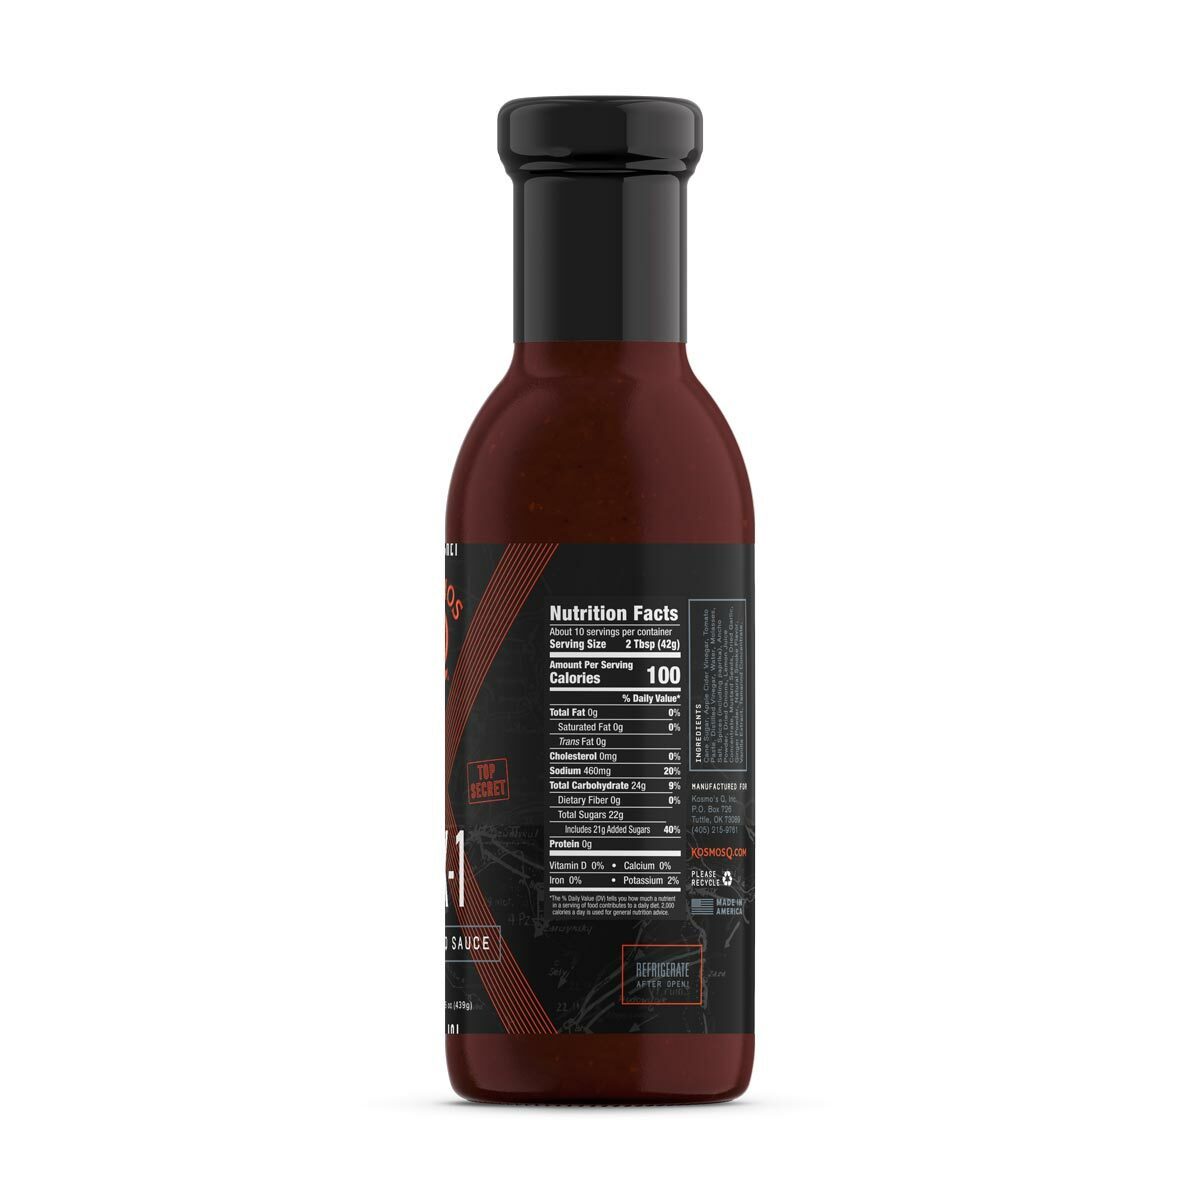 OP X-1 Secret BBQ Sauce